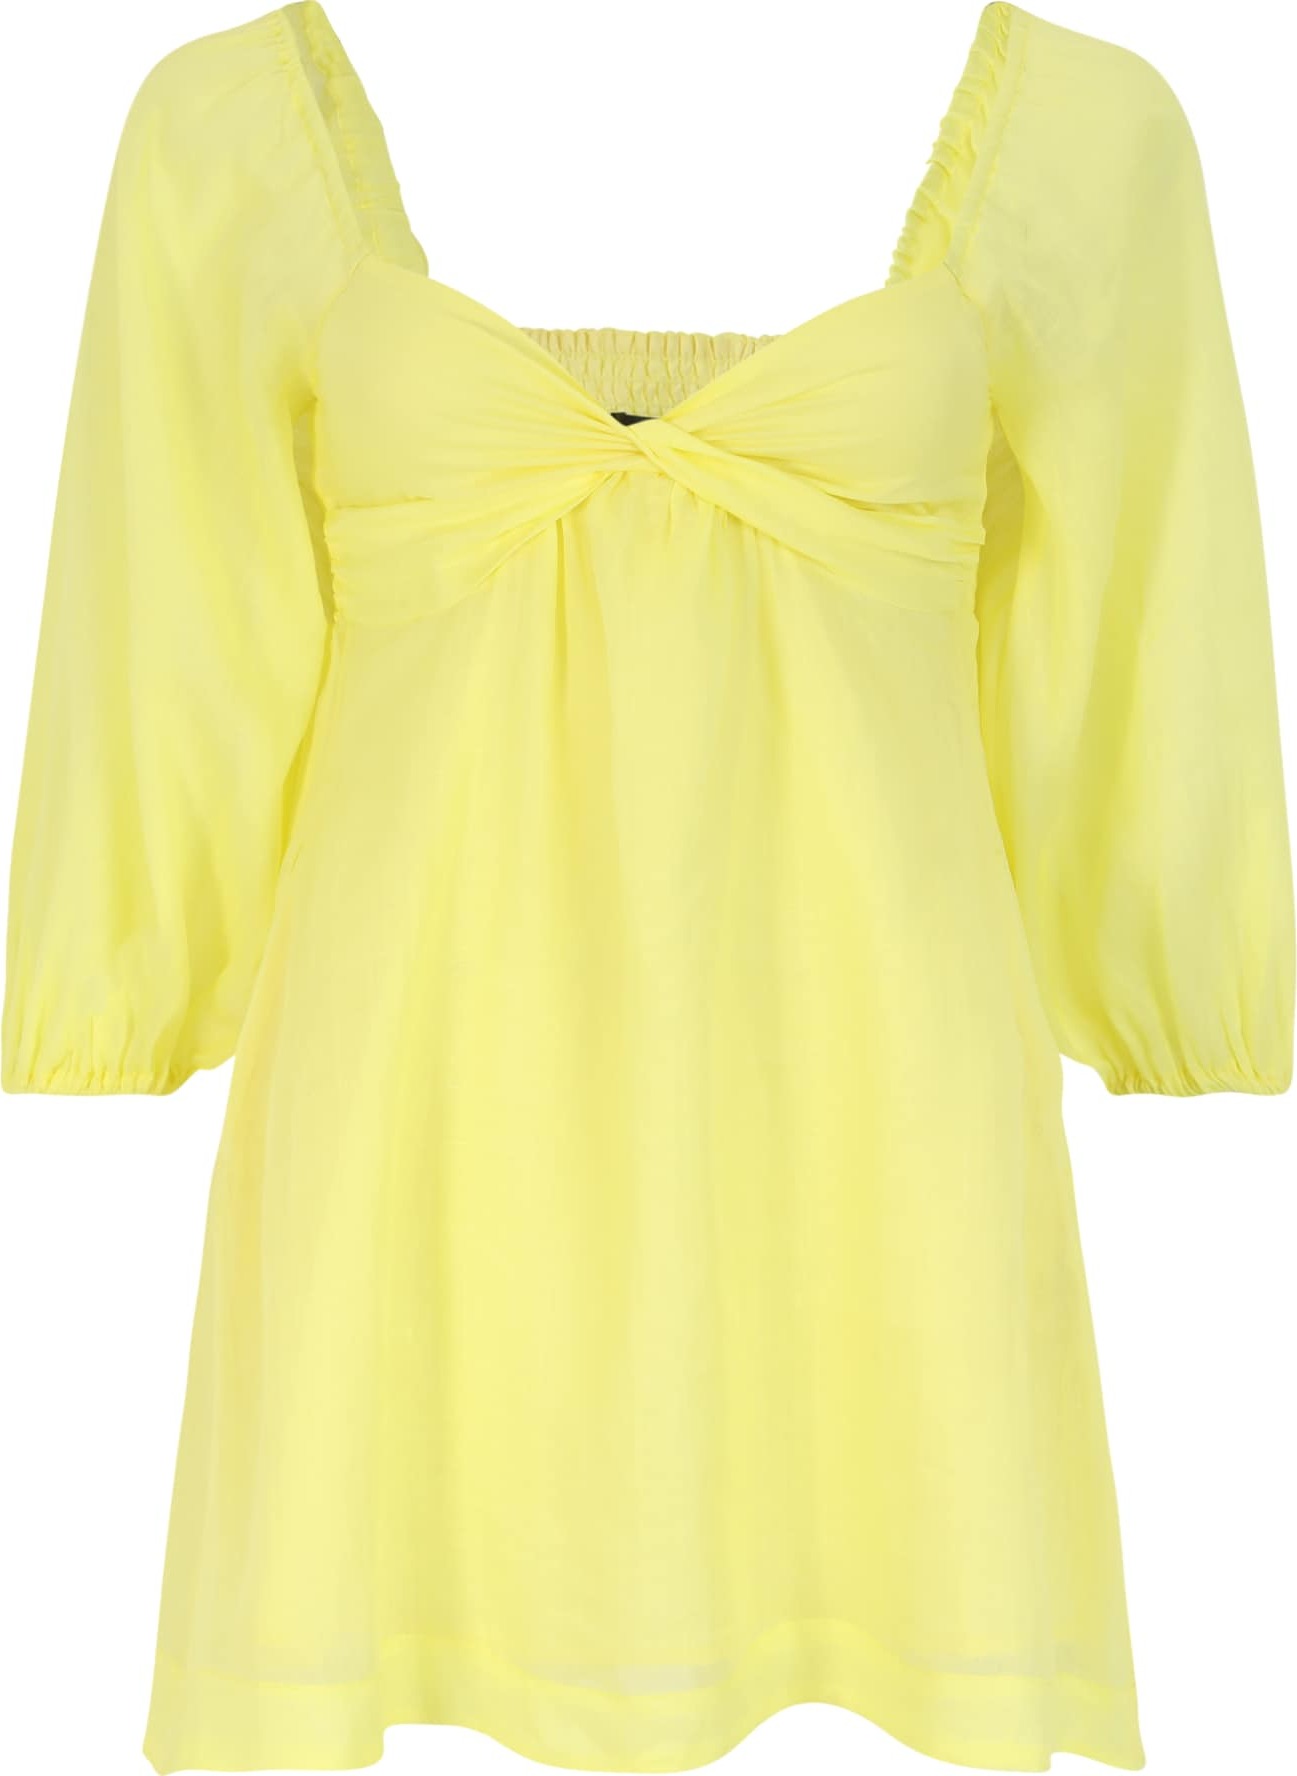 Banana Republic Petite Letní šaty žlutá